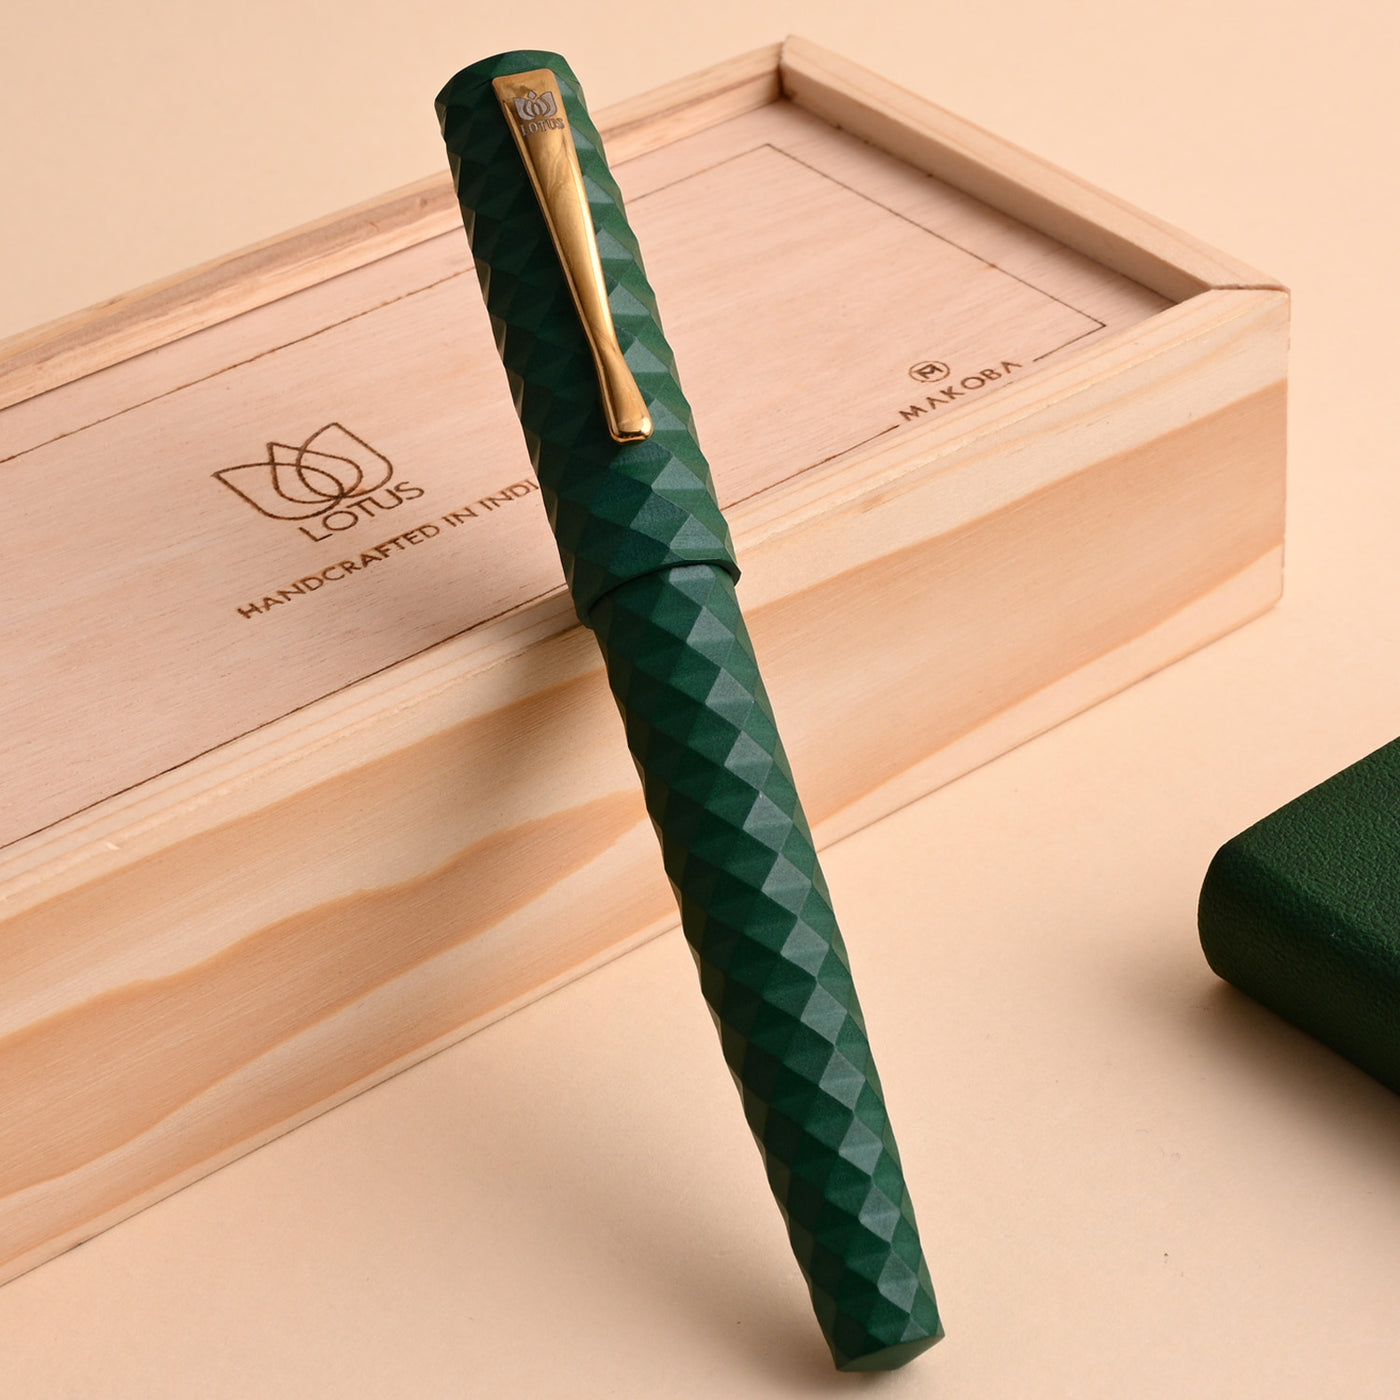 Lotus Palmae Ebonite Fountain Pen - Deep Green GT 2